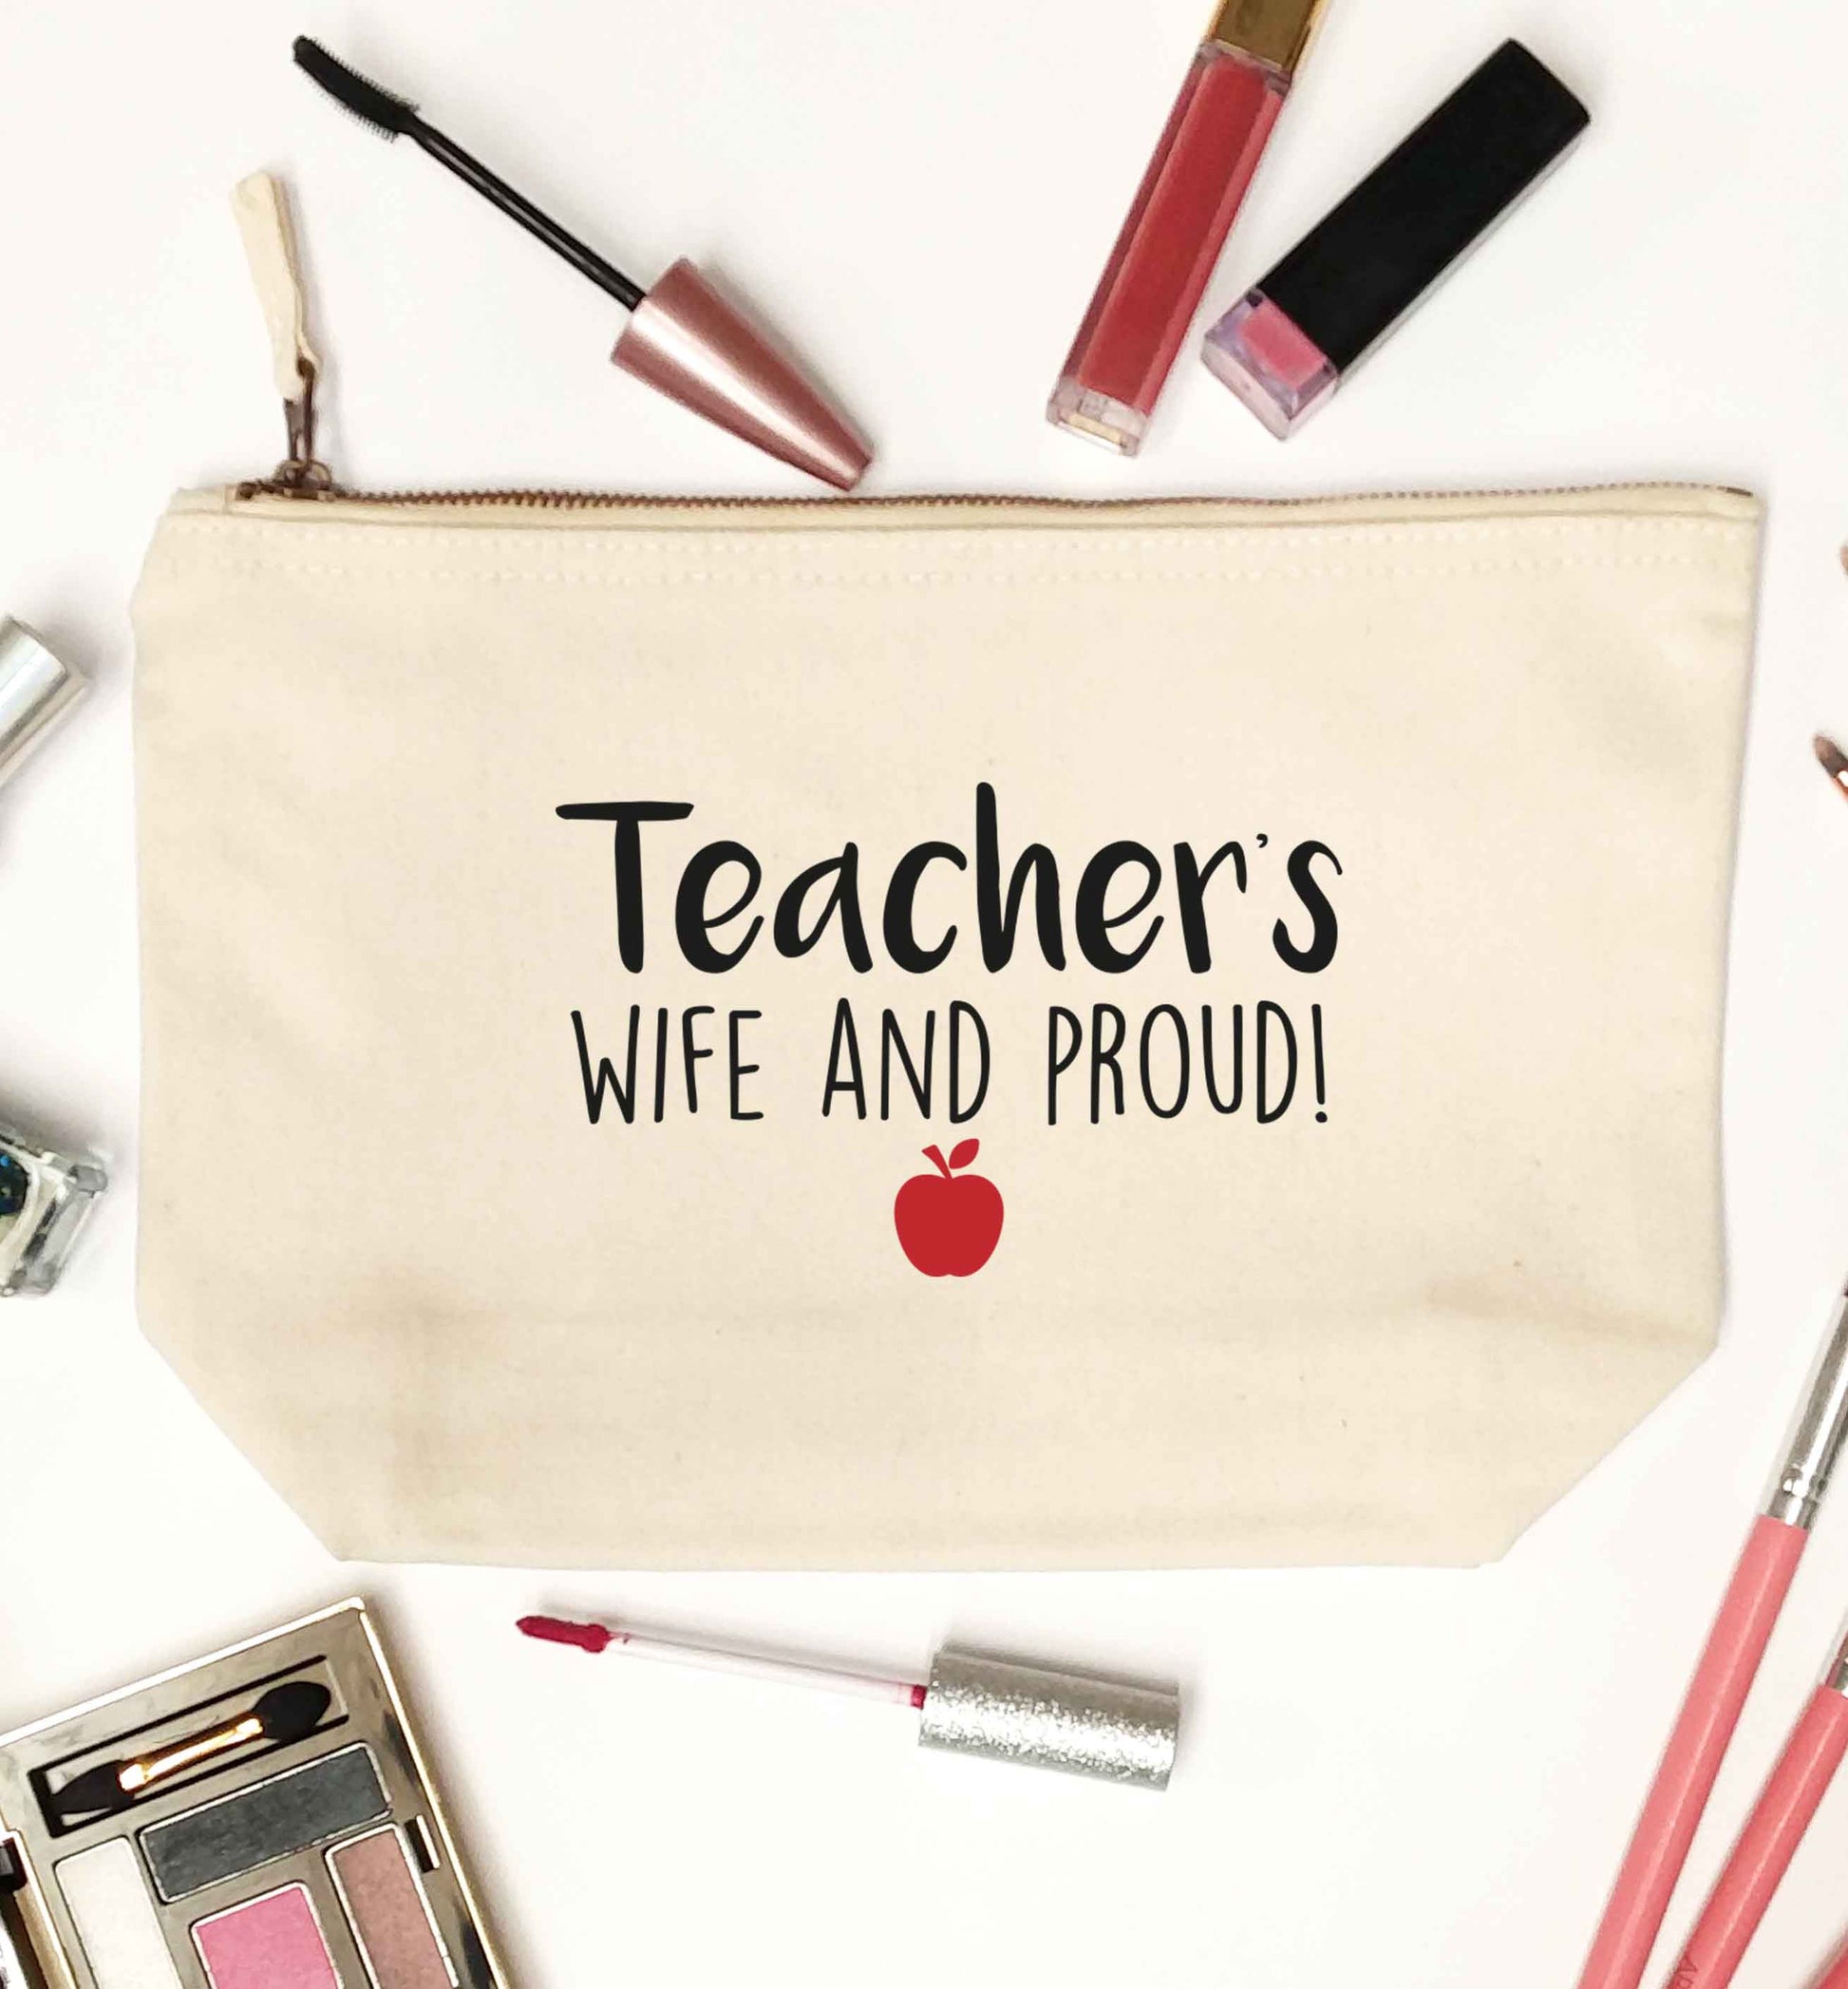 Teachers wife and proud natural makeup bag